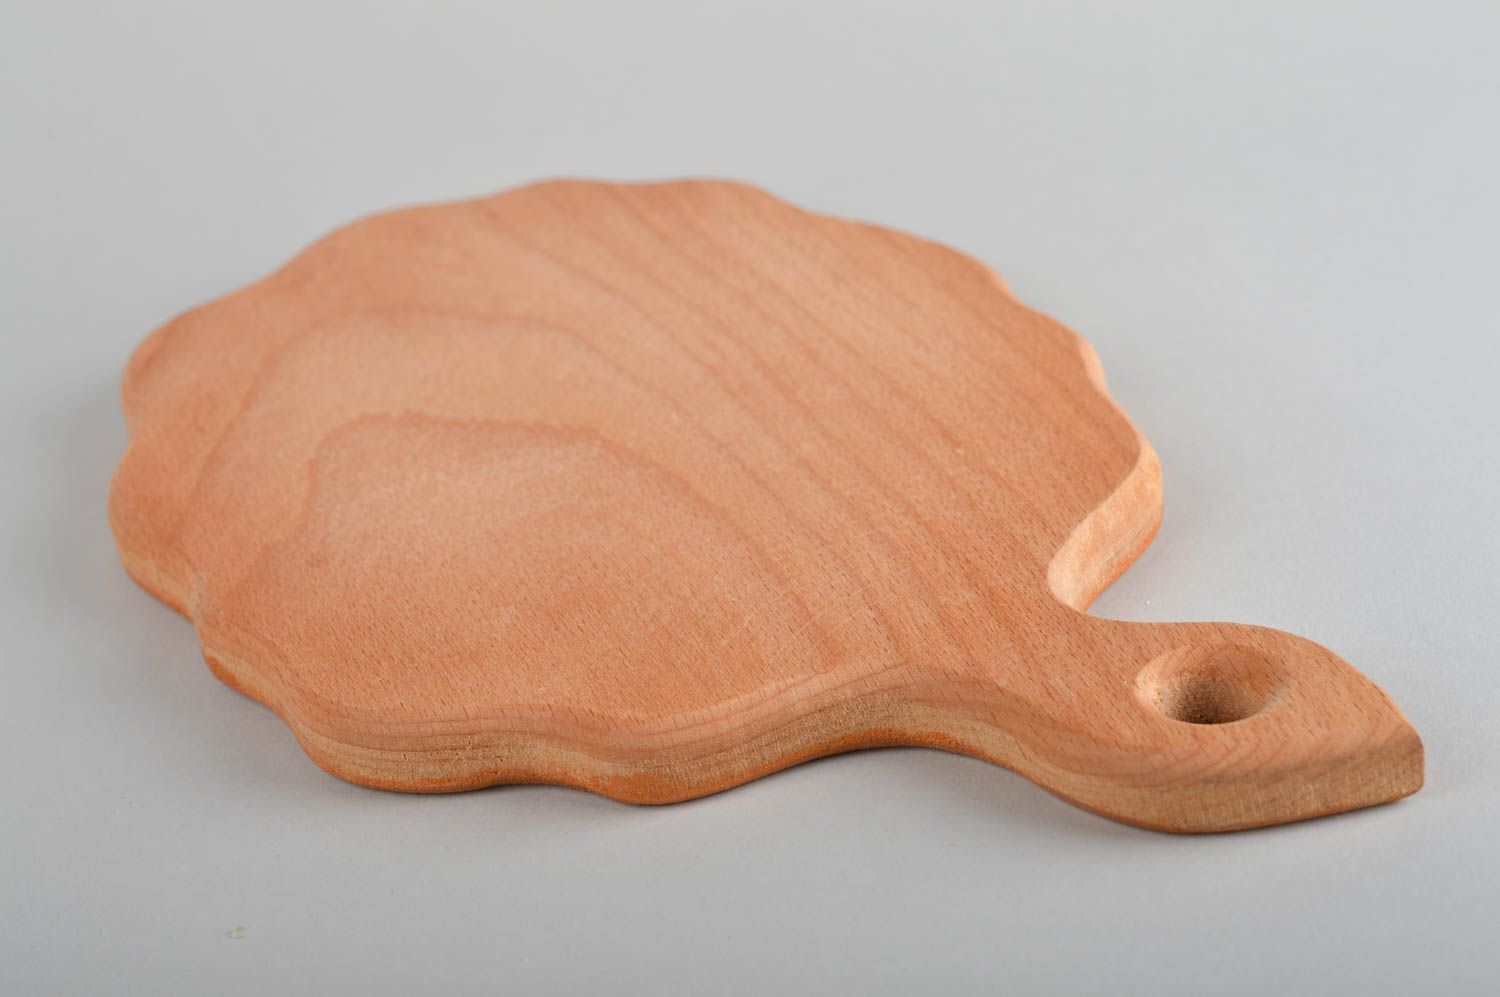 Tabla de cortar de madera utensilio de cocina hecho a mano elemento decorativo foto 4